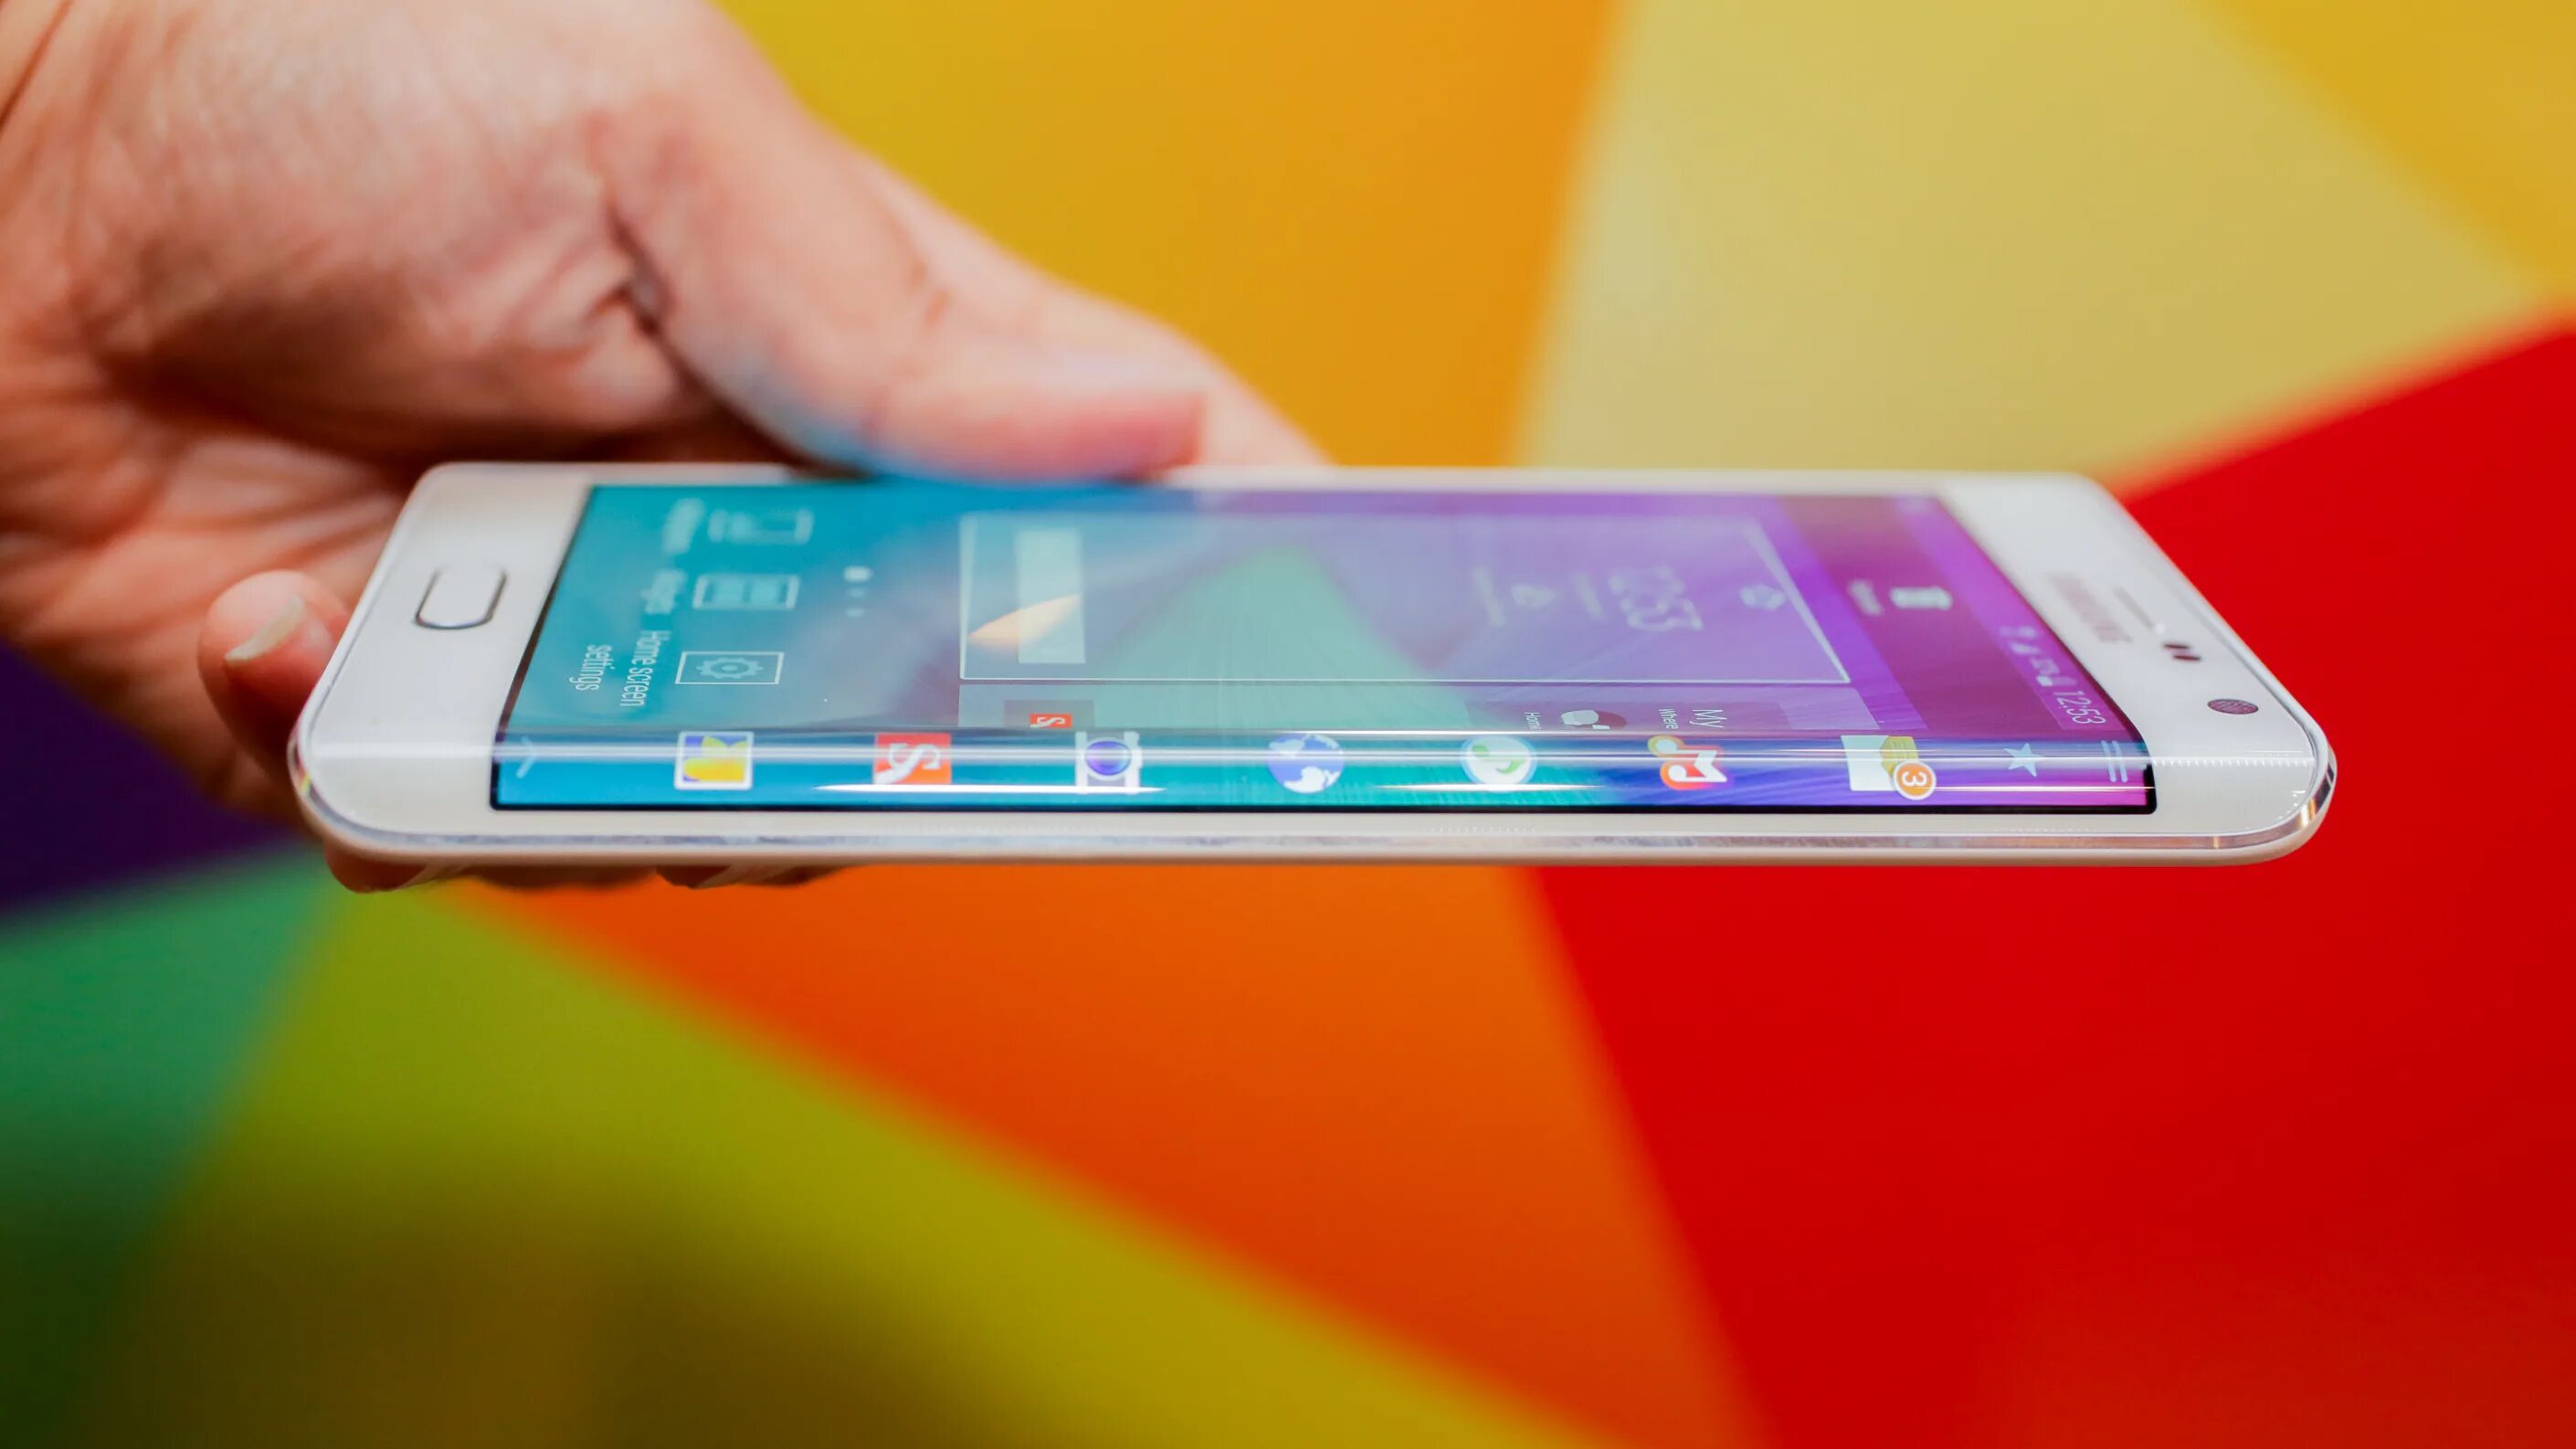 Гнутый самсунг. Самсунг галакси с изогнутым экраном 2016. Samsung Galaxy Note 4 Edge. Samsung Galaxy Note 5. Гелакси a6 Эдж с изогнутым экраном.